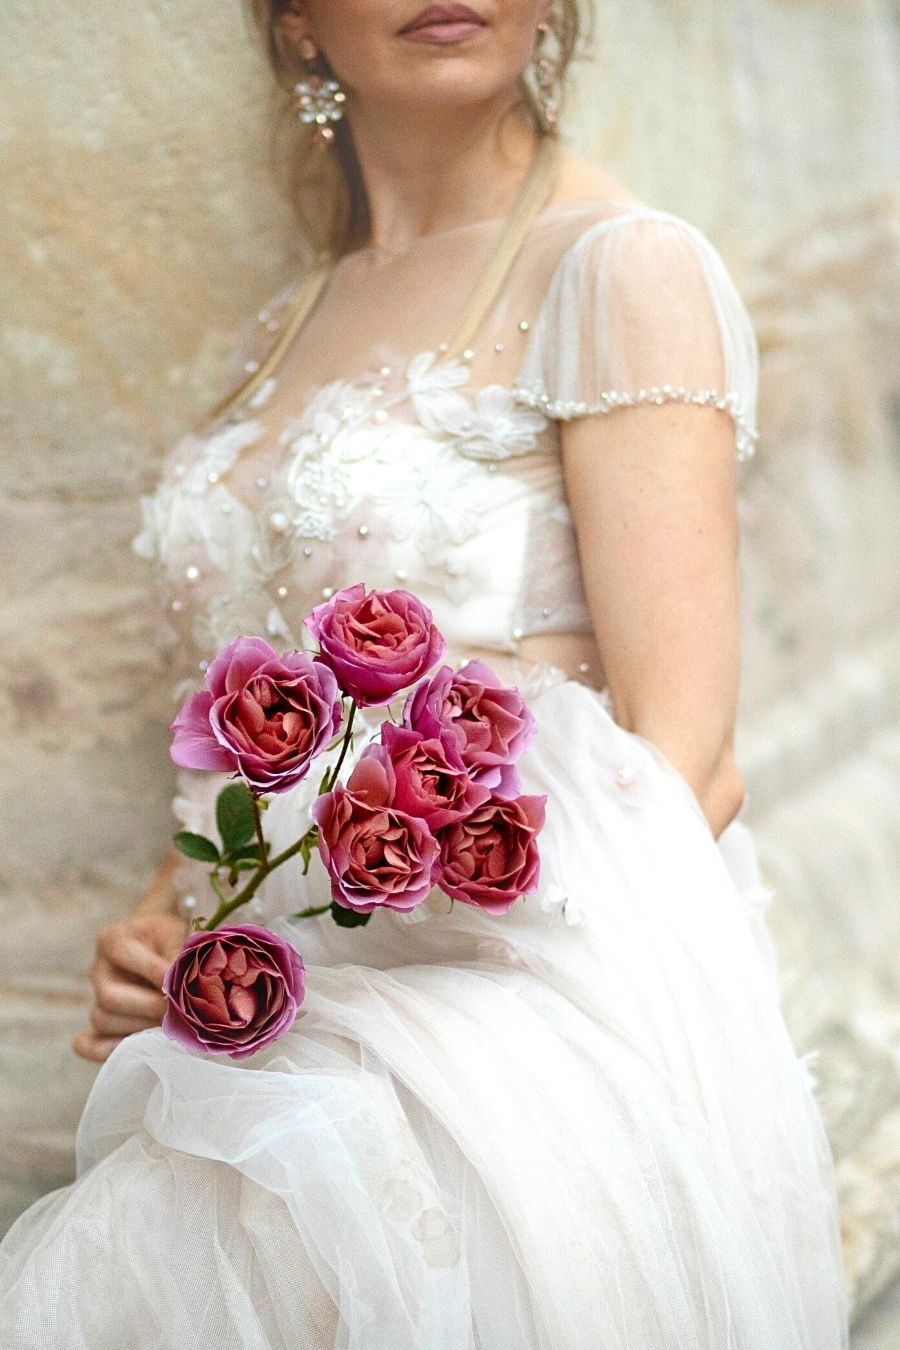 Wabara Aoi Rose Bride with roses Alina Neacsa on Thursd